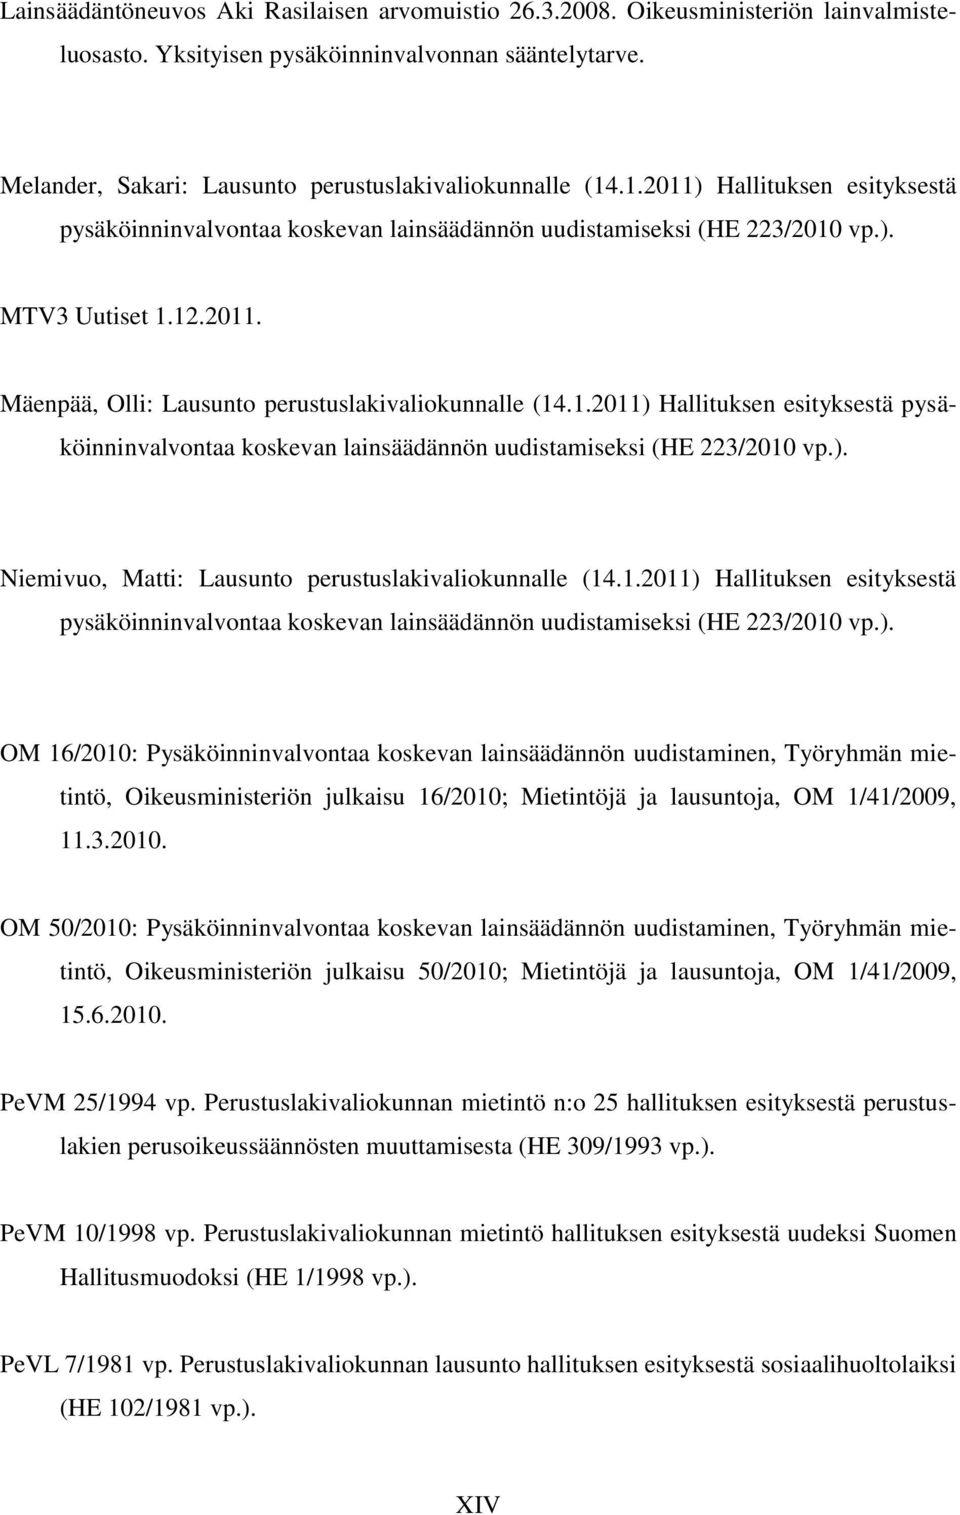 1.2011) Hallituksen esityksestä pysäköinninvalvontaa koskevan lainsäädännön uudistamiseksi (HE 223/2010 vp.). Niemivuo, Matti: Lausunto perustuslakivaliokunnalle (14.1.2011) Hallituksen esityksestä pysäköinninvalvontaa koskevan lainsäädännön uudistamiseksi (HE 223/2010 vp.). OM 16/2010: Pysäköinninvalvontaa koskevan lainsäädännön uudistaminen, Työryhmän mietintö, Oikeusministeriön julkaisu 16/2010; Mietintöjä ja lausuntoja, OM 1/41/2009, 11.